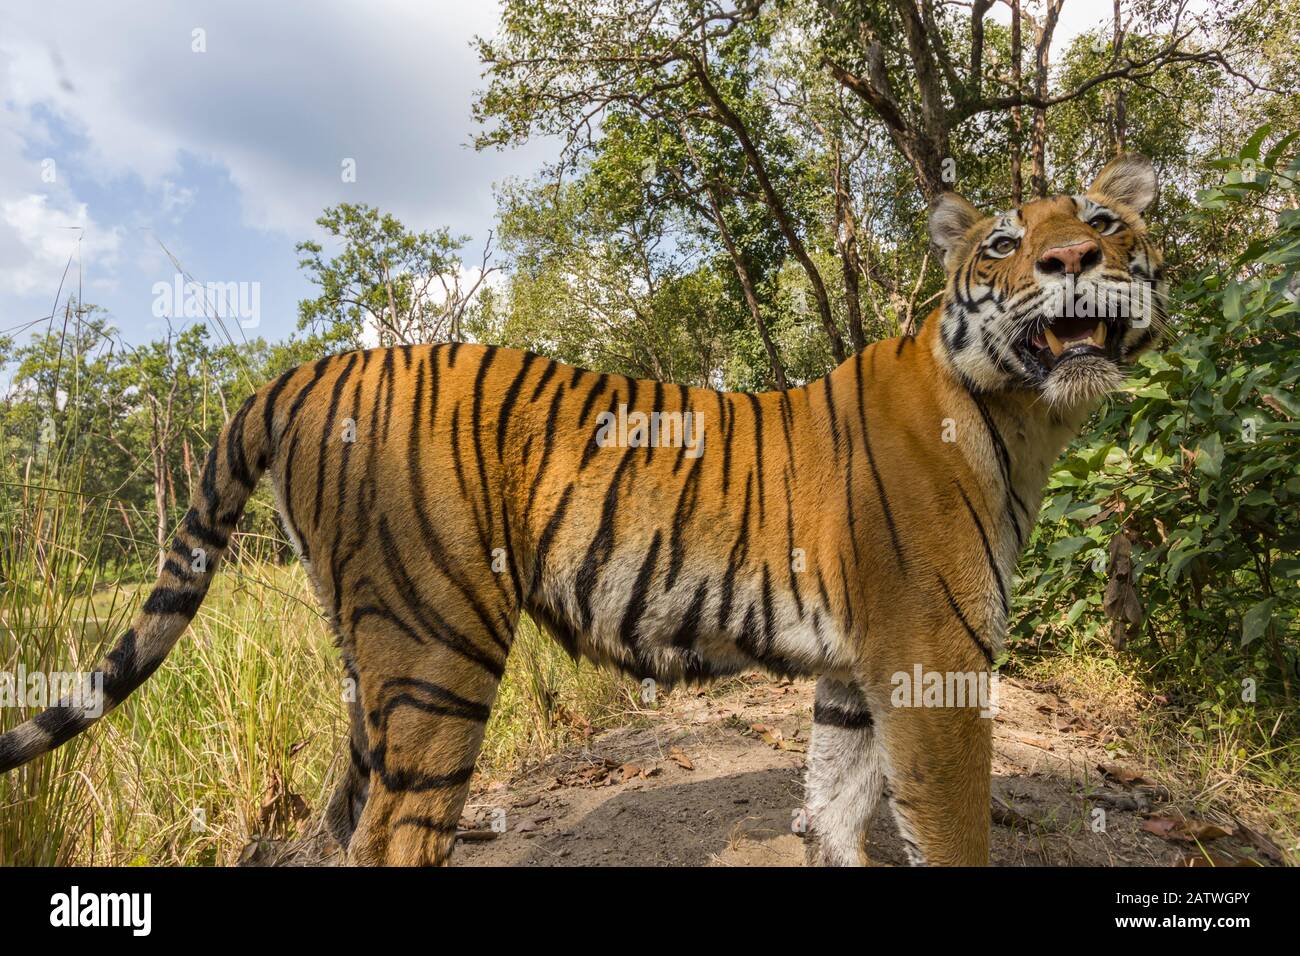 Tigre de Bengala (Panthera tigris tigres) tigress, deteniéndose debido al sonido de la cámara mientras patrullaba, Parque Nacional Kanha, India central. Imagen de captura de cámara. Foto de stock